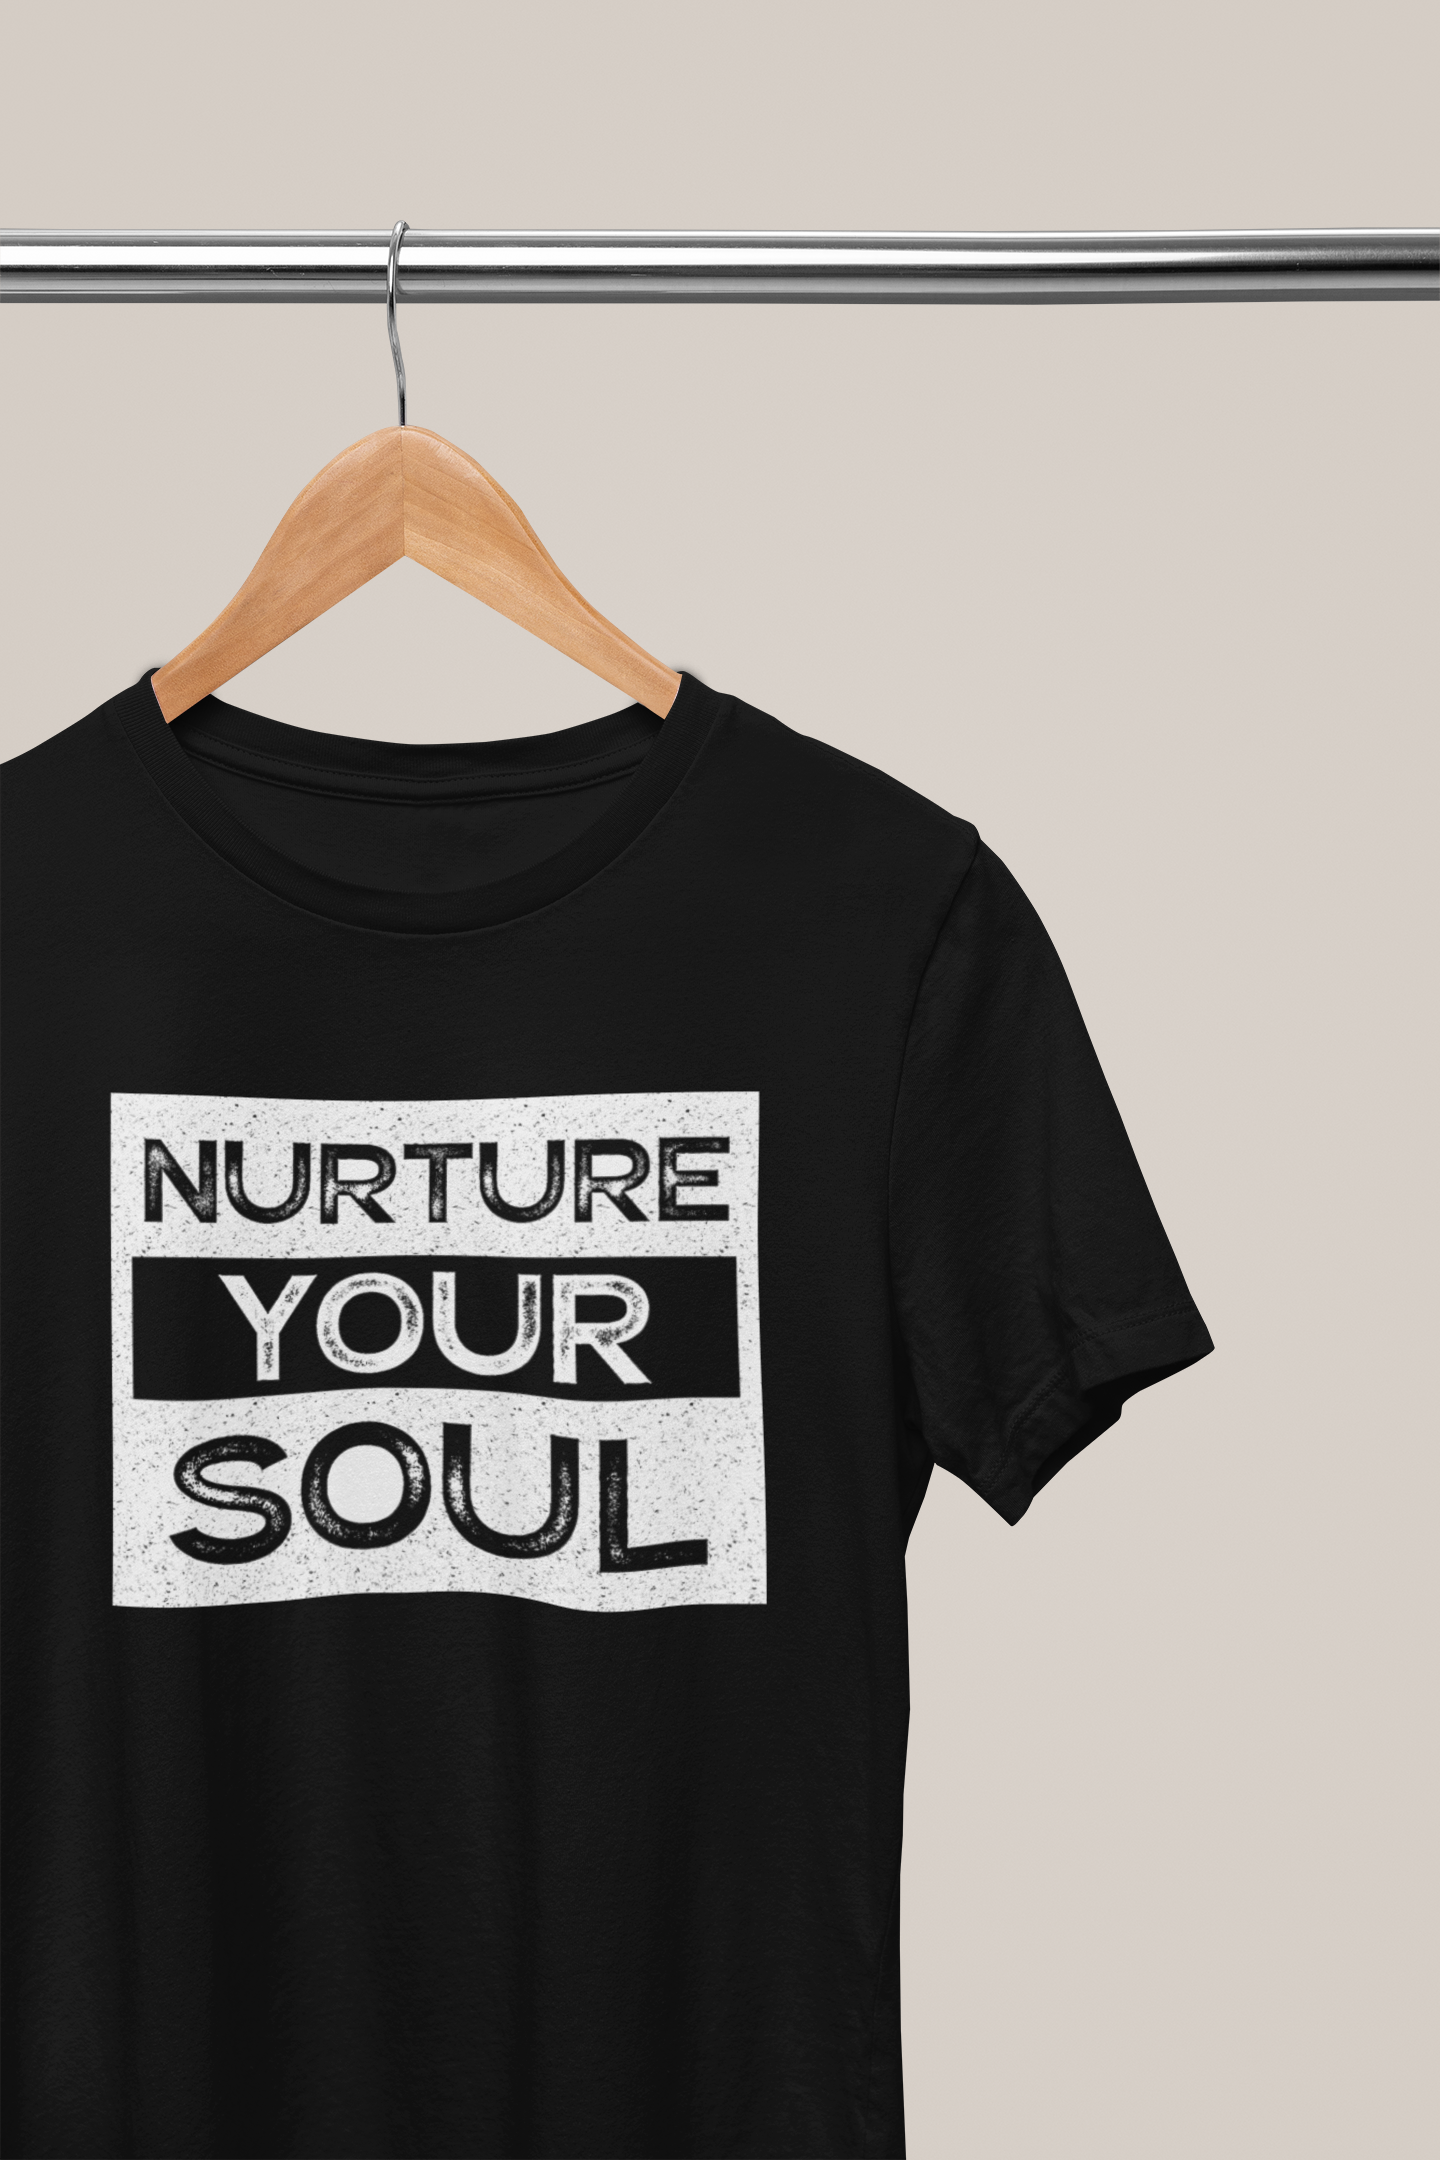 Nurture Your Soul, Hoodies, Sweatshirts, Tees, and Mugs